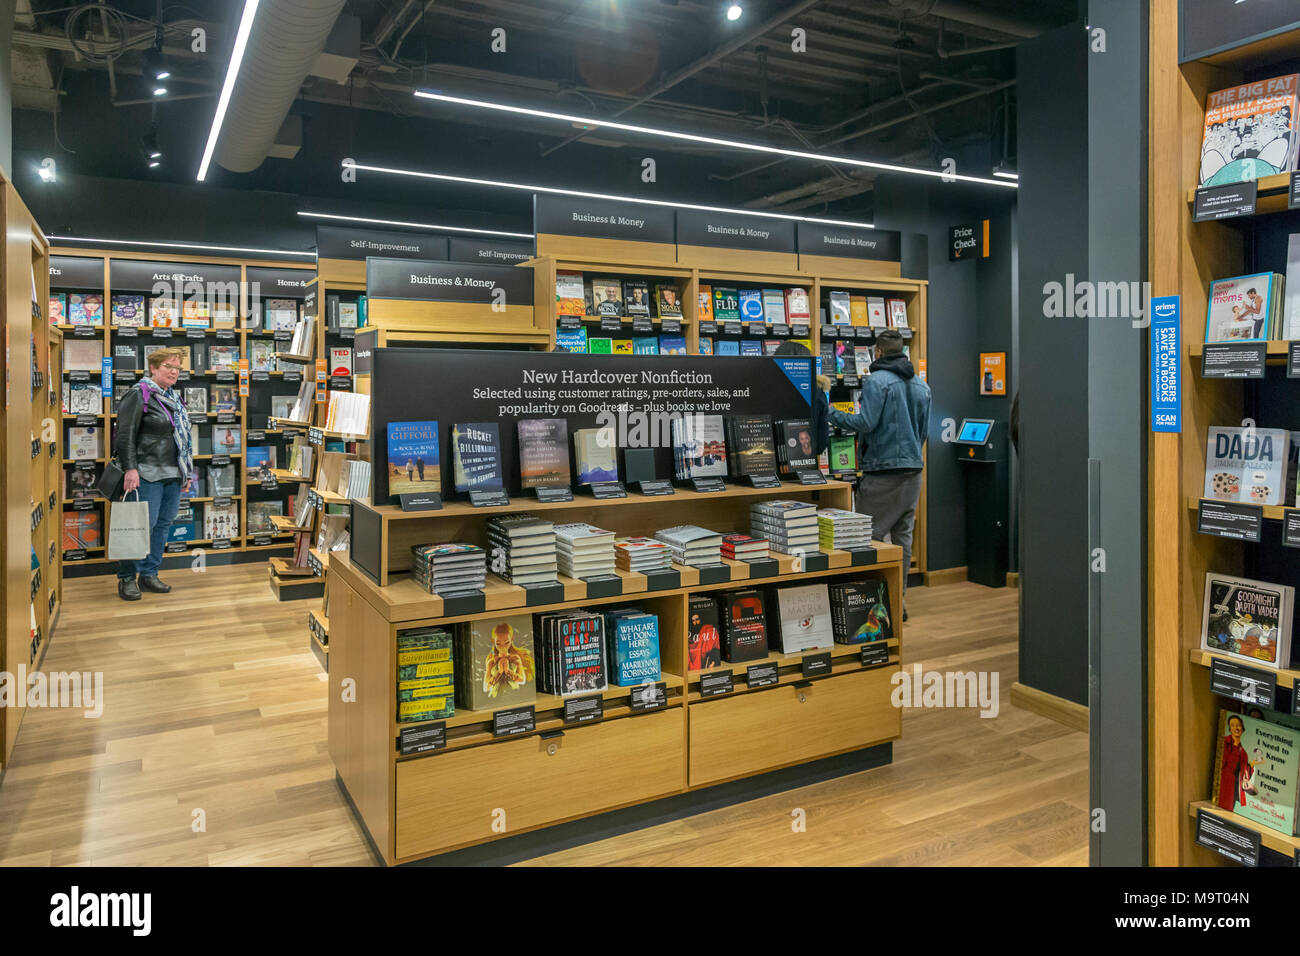 Washington, DC - La librería de Amazon en el barrio de Georgetown de  Washington. La tienda abrió sus puertas en lo que solía ser una librería  Barnes & Noble. Se displa Fotografía